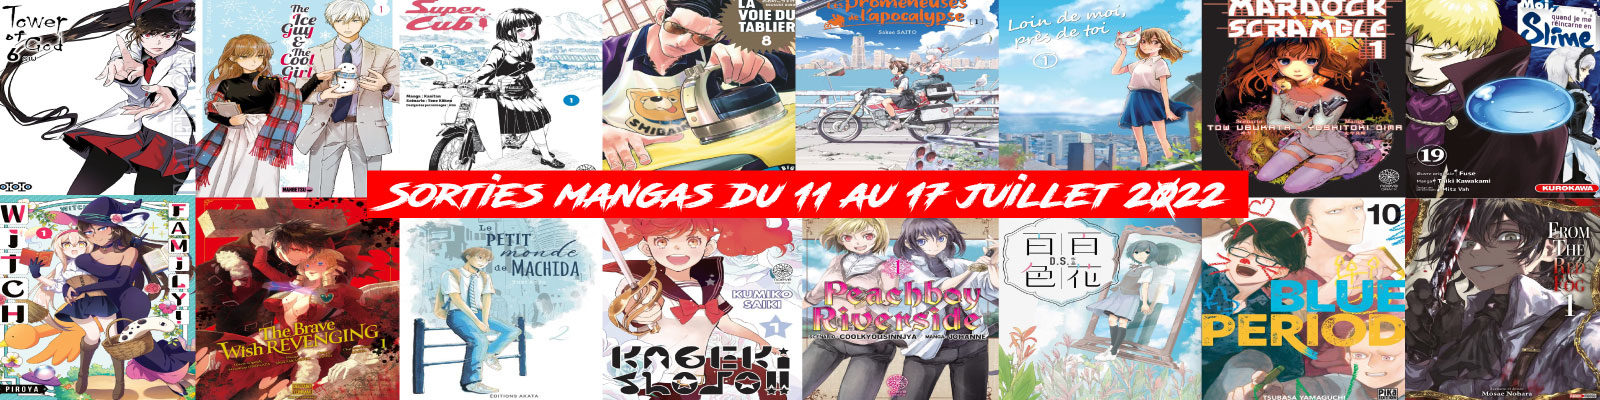 Sorties mangas-du-11-au-17-juillet-2022